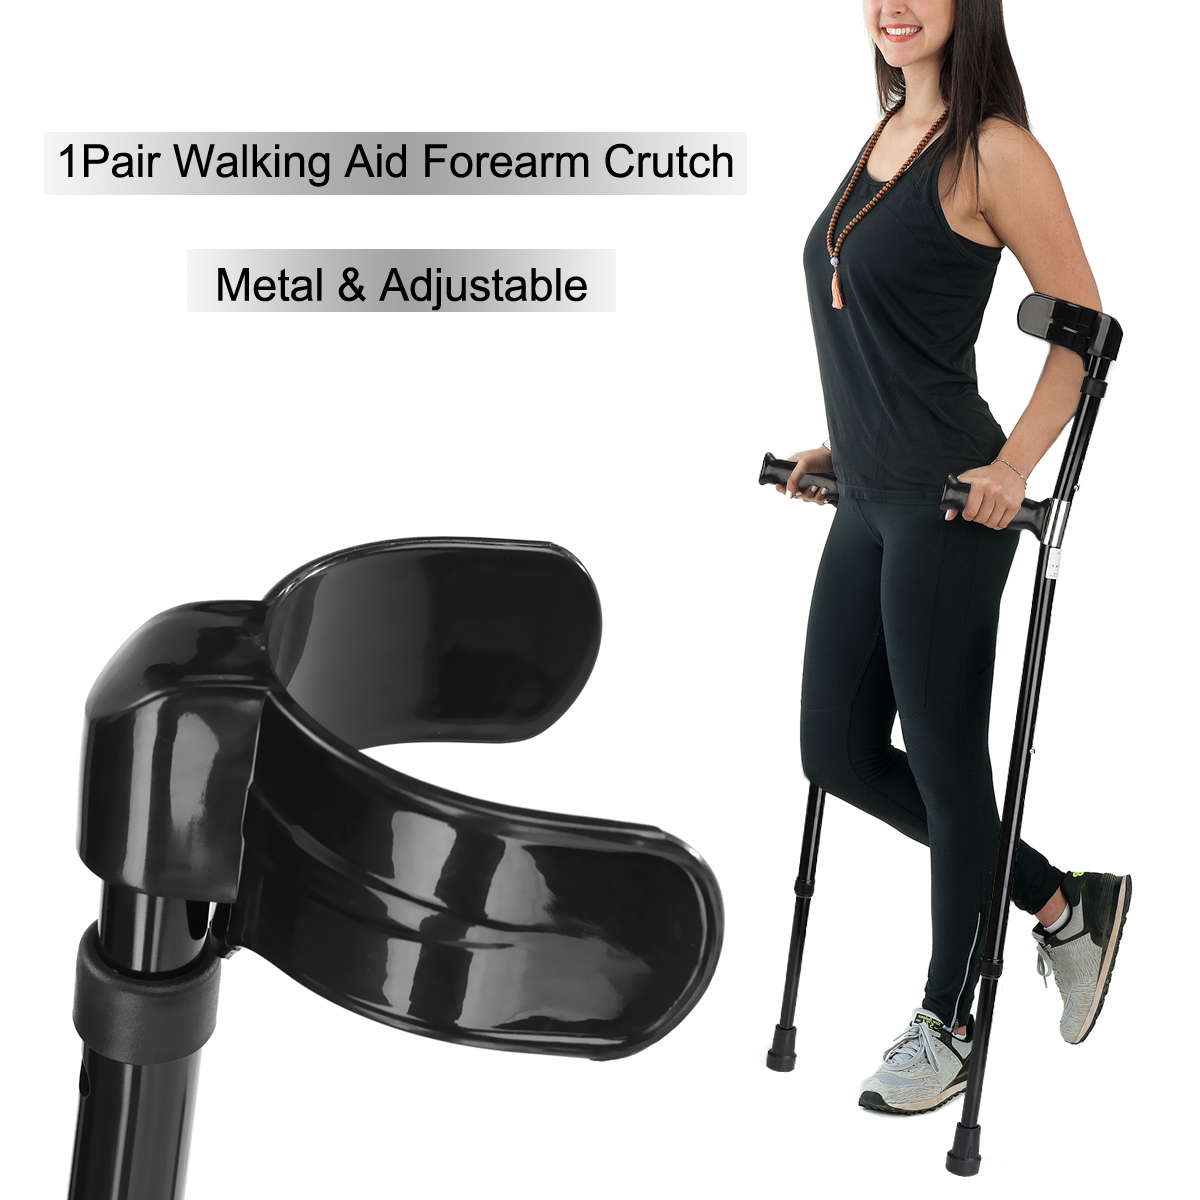 A-Pair-of-Adjustable-Aluminum-Alloy-Armpit-Crutches-Forearm-Crutches-Elbow-Crutches-Climbing-Sticks-1645522-3